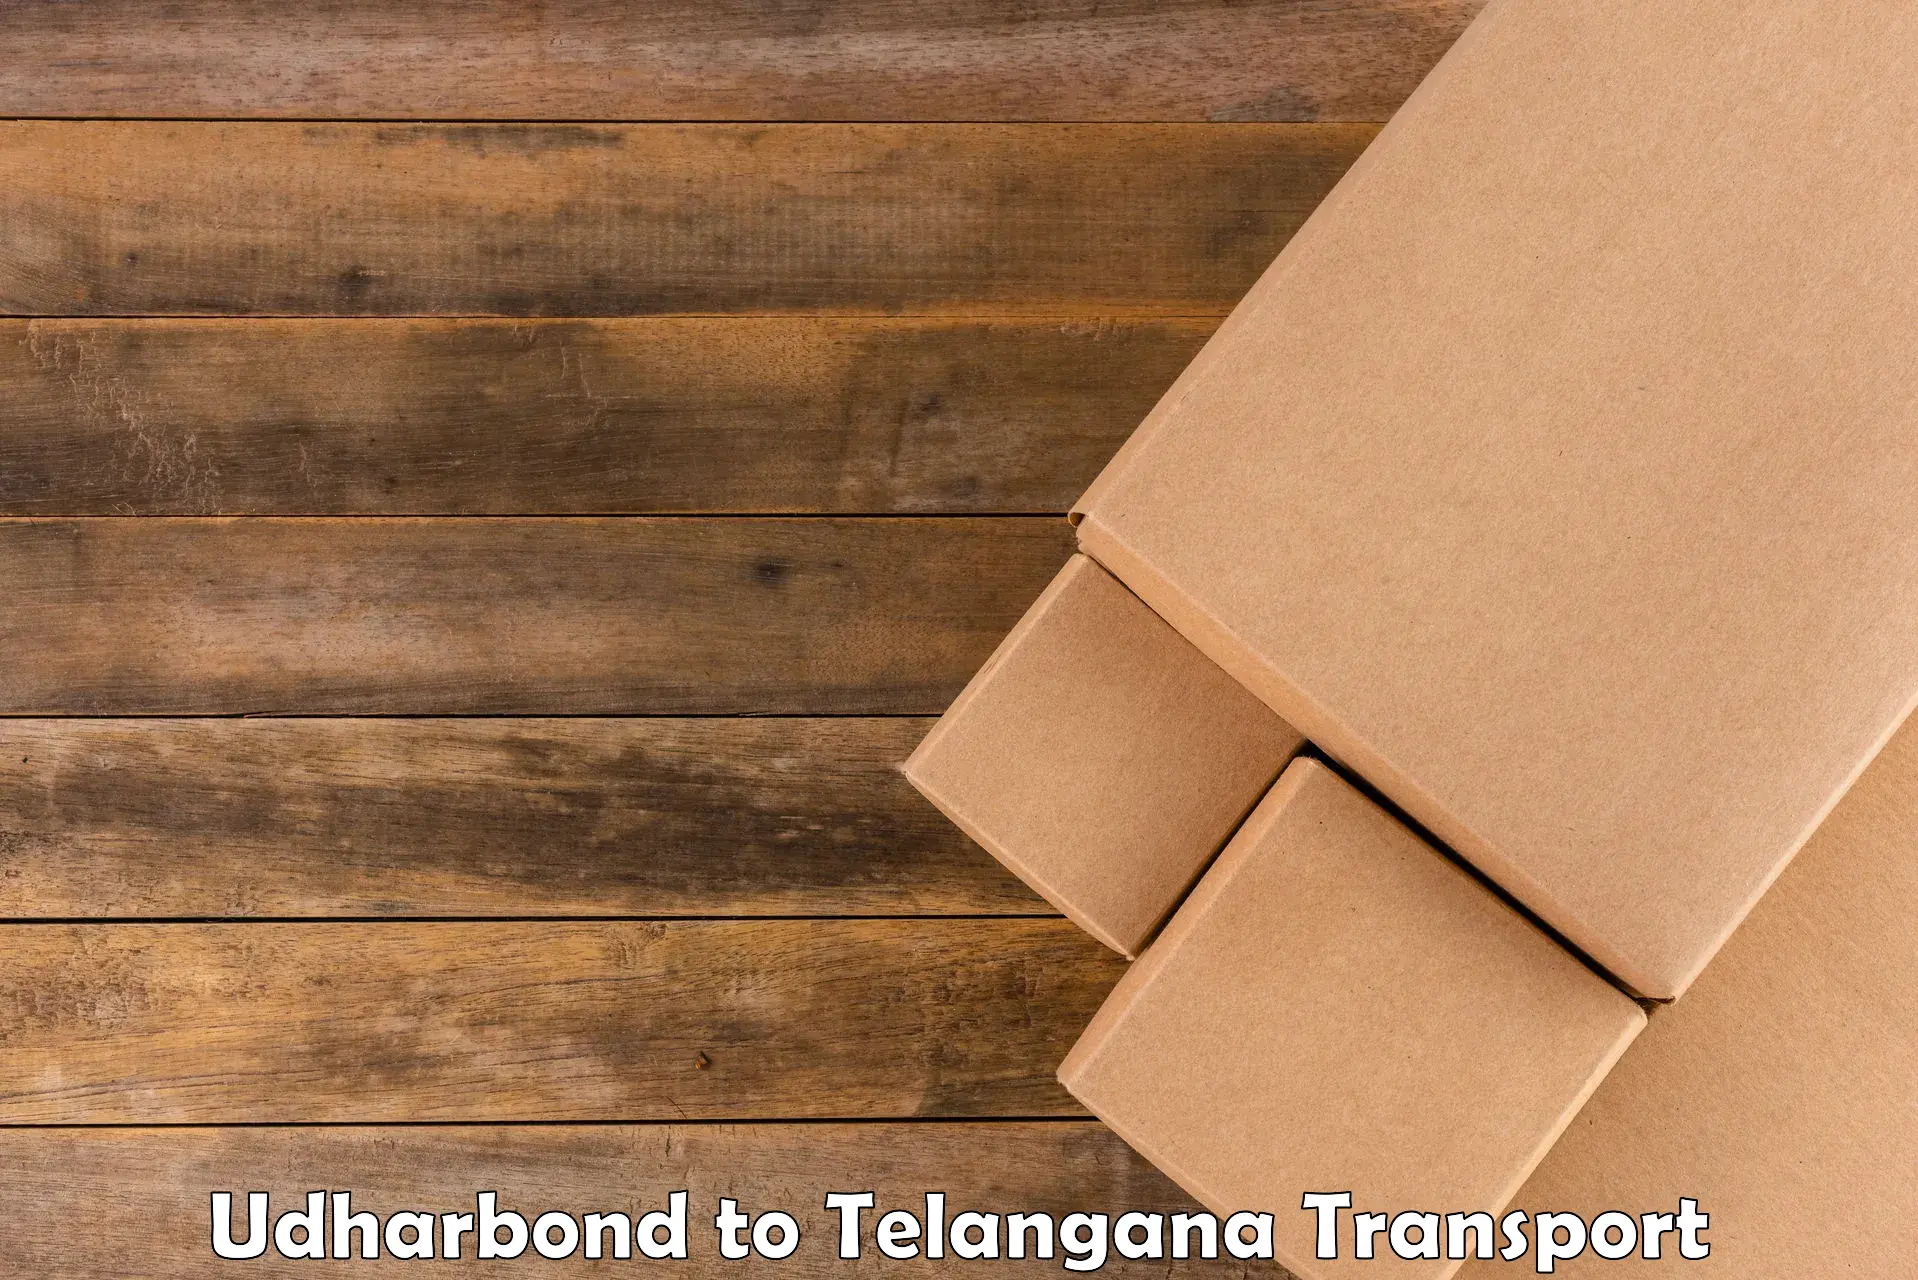 Pick up transport service Udharbond to Manneguda